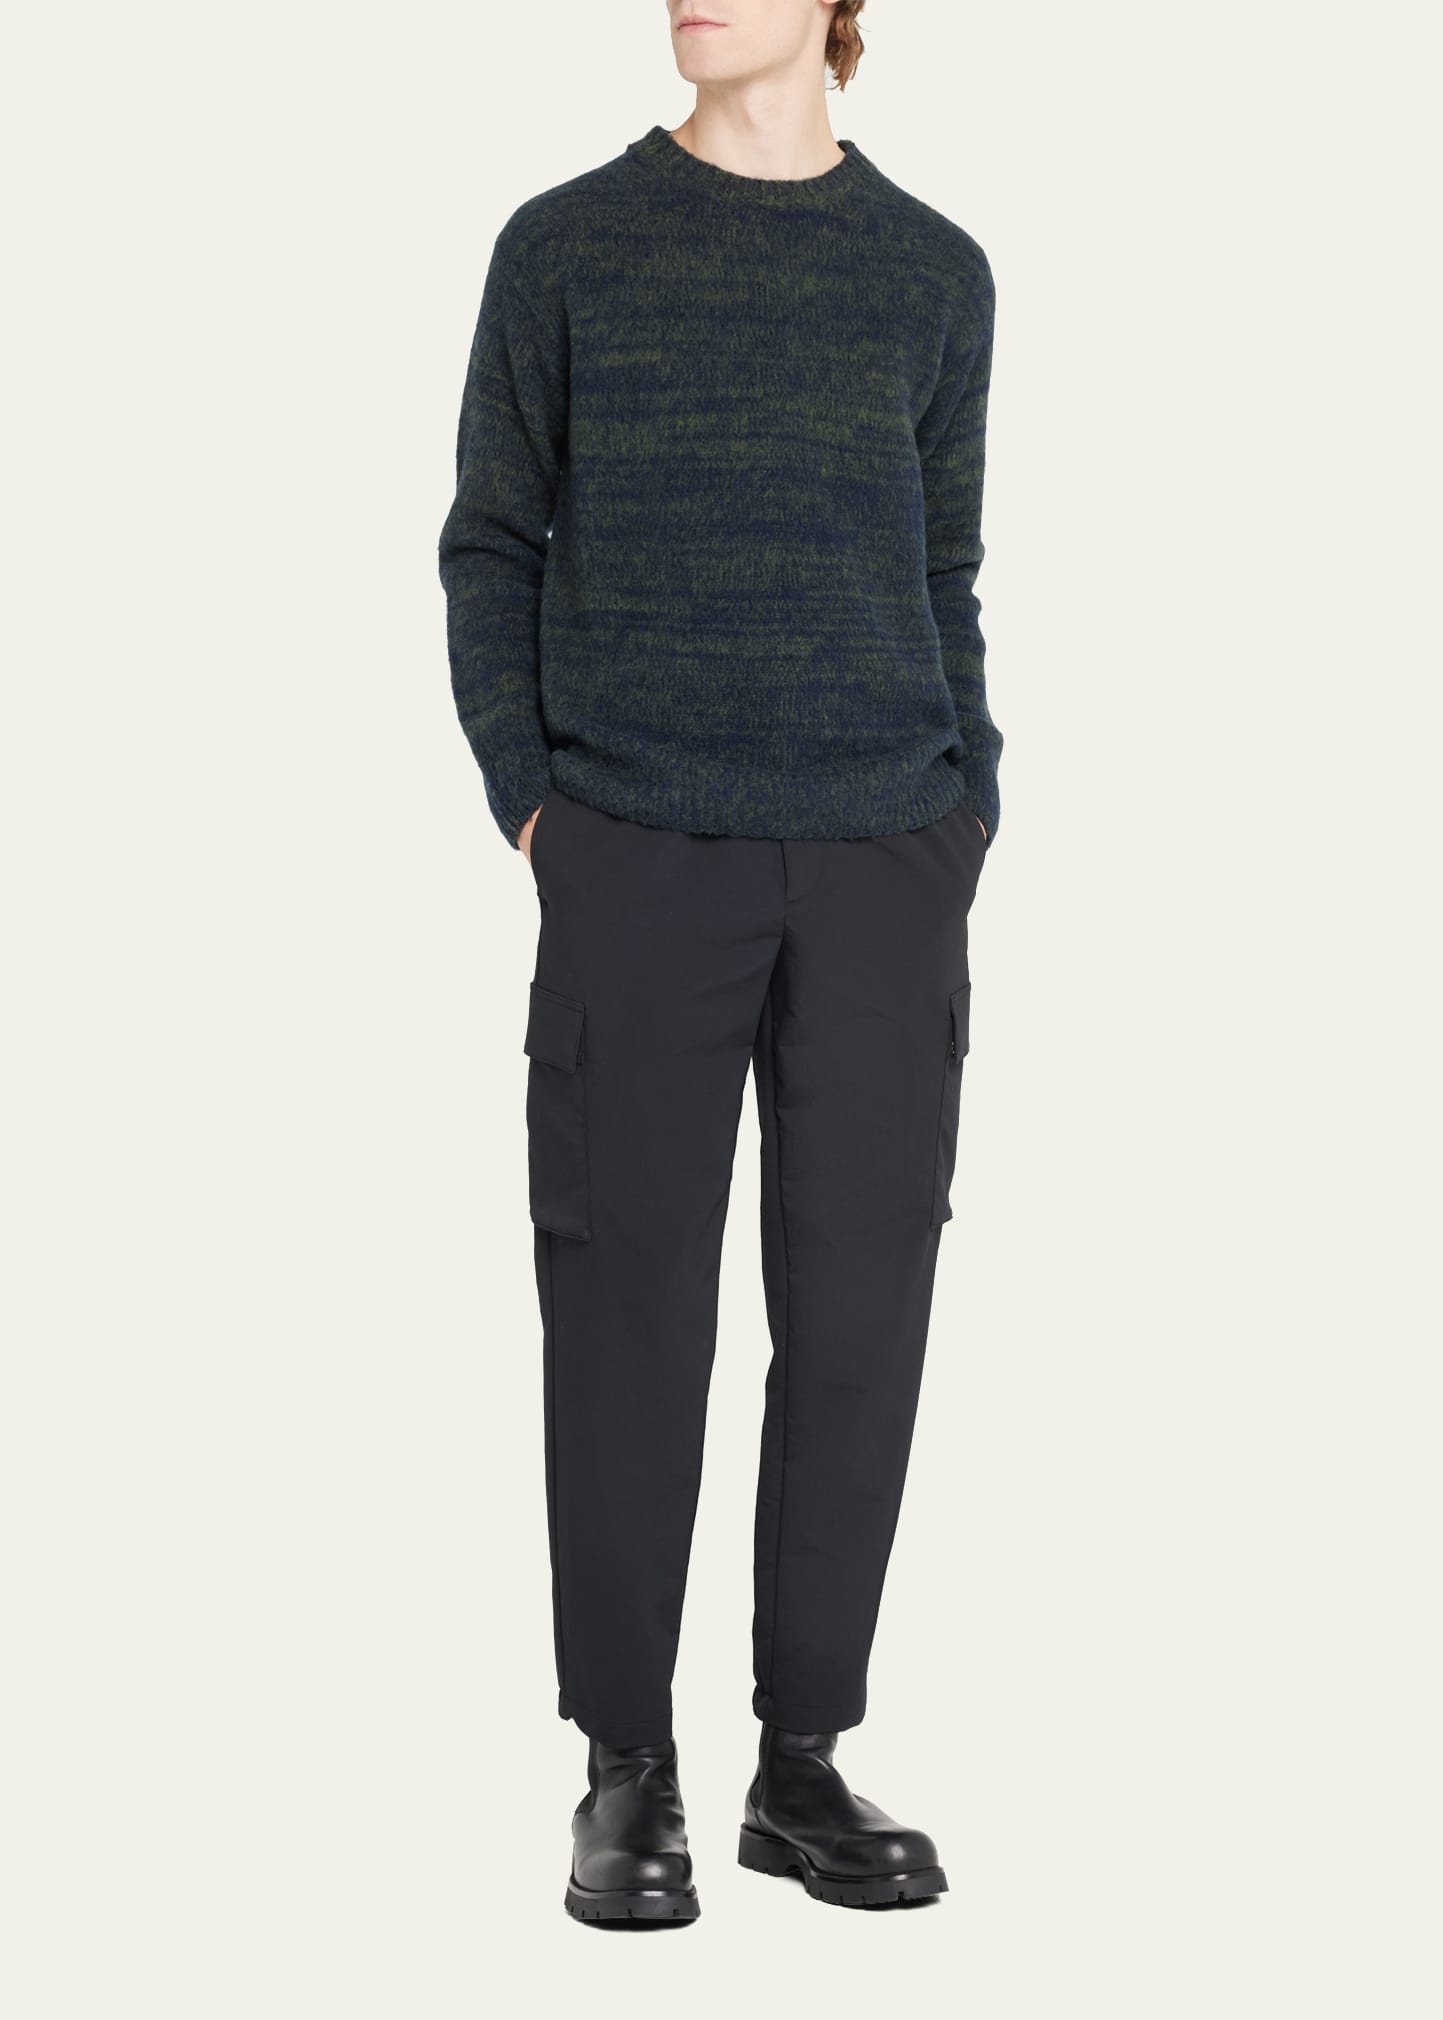 Moncler Men's Marled Wool Sweater